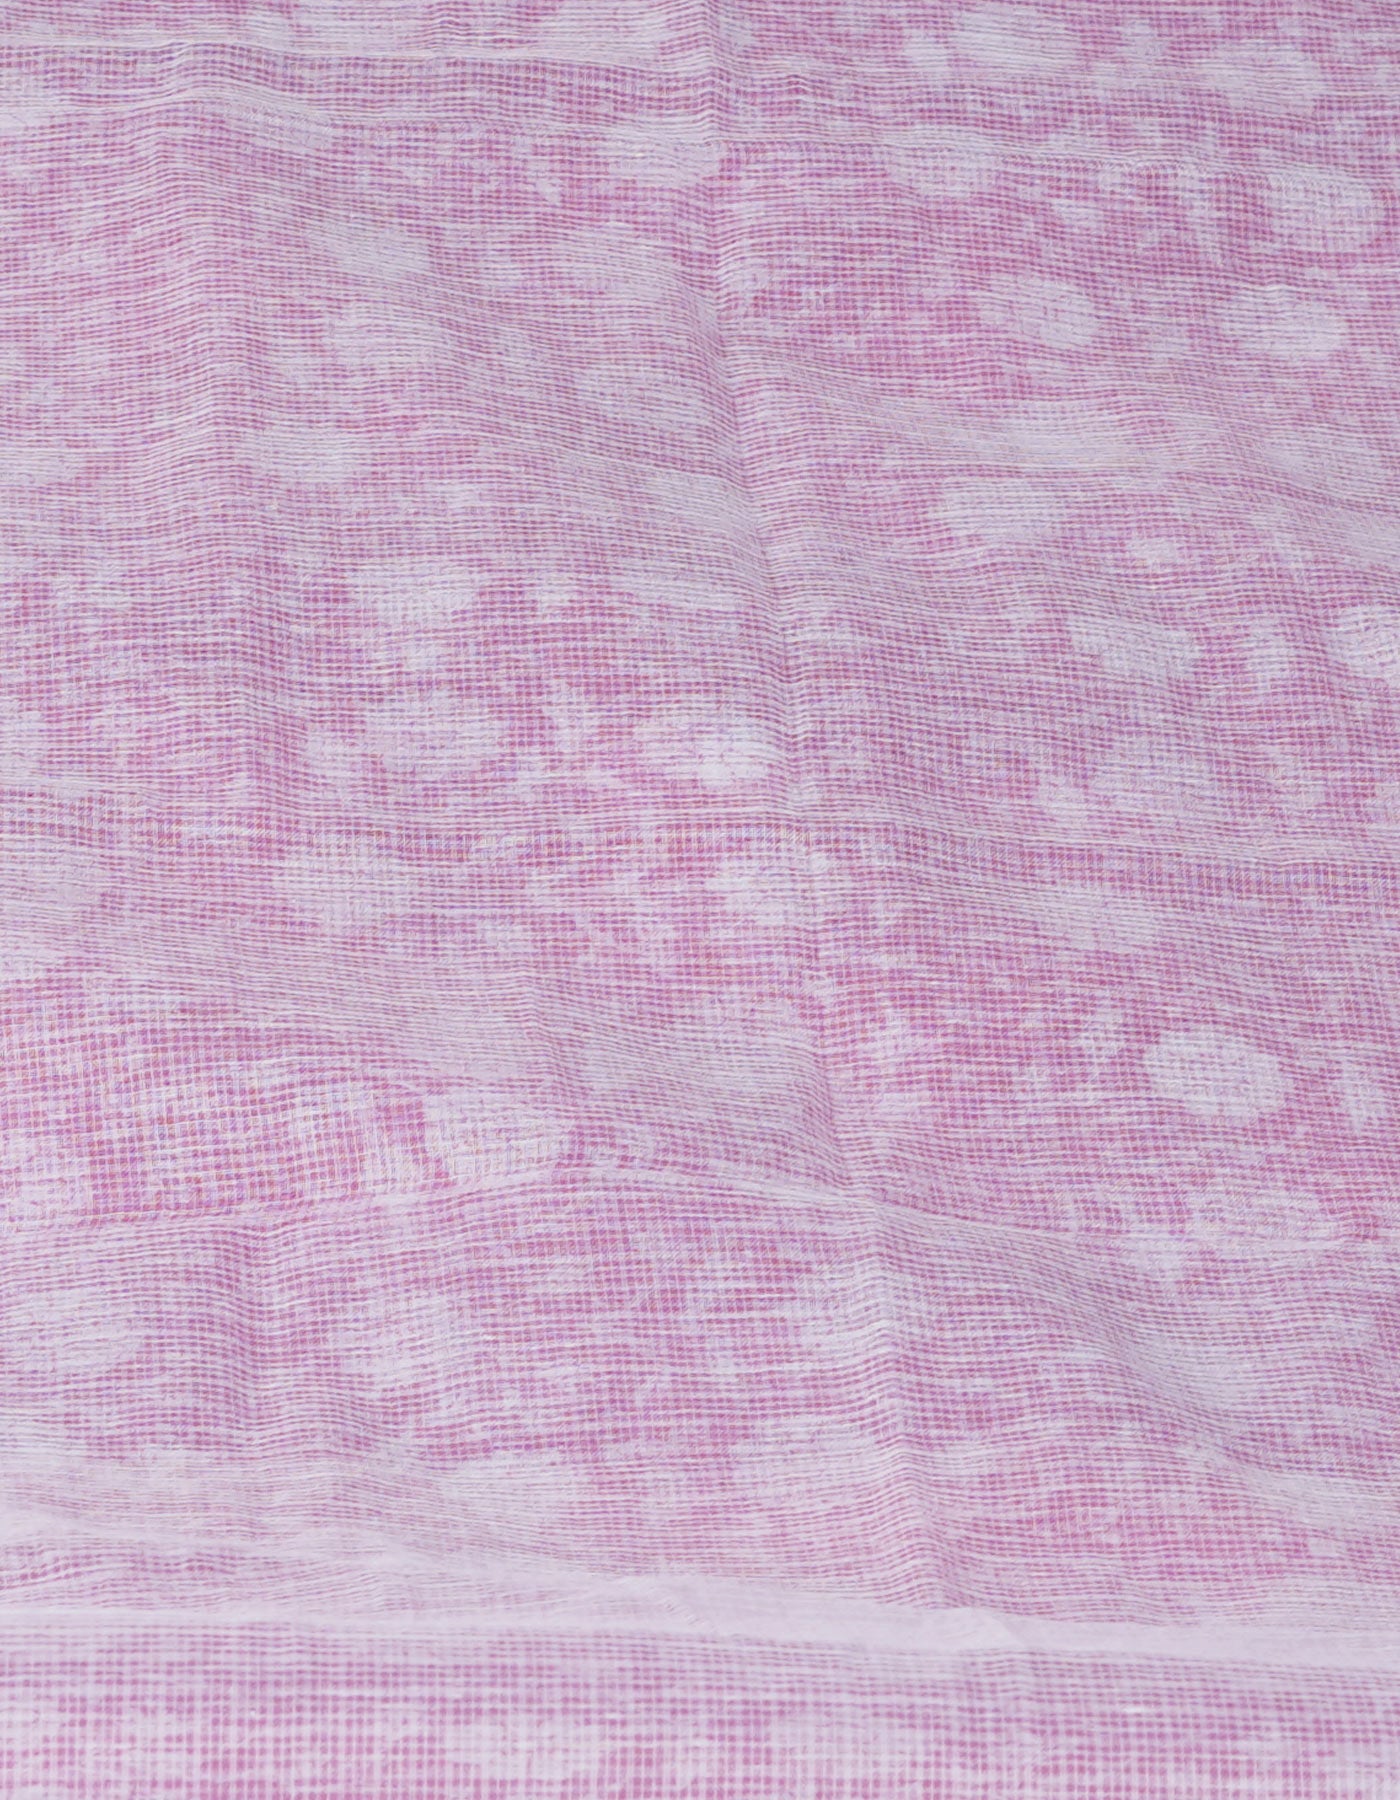 Pink Block Printed Kota Saree-UNM70938